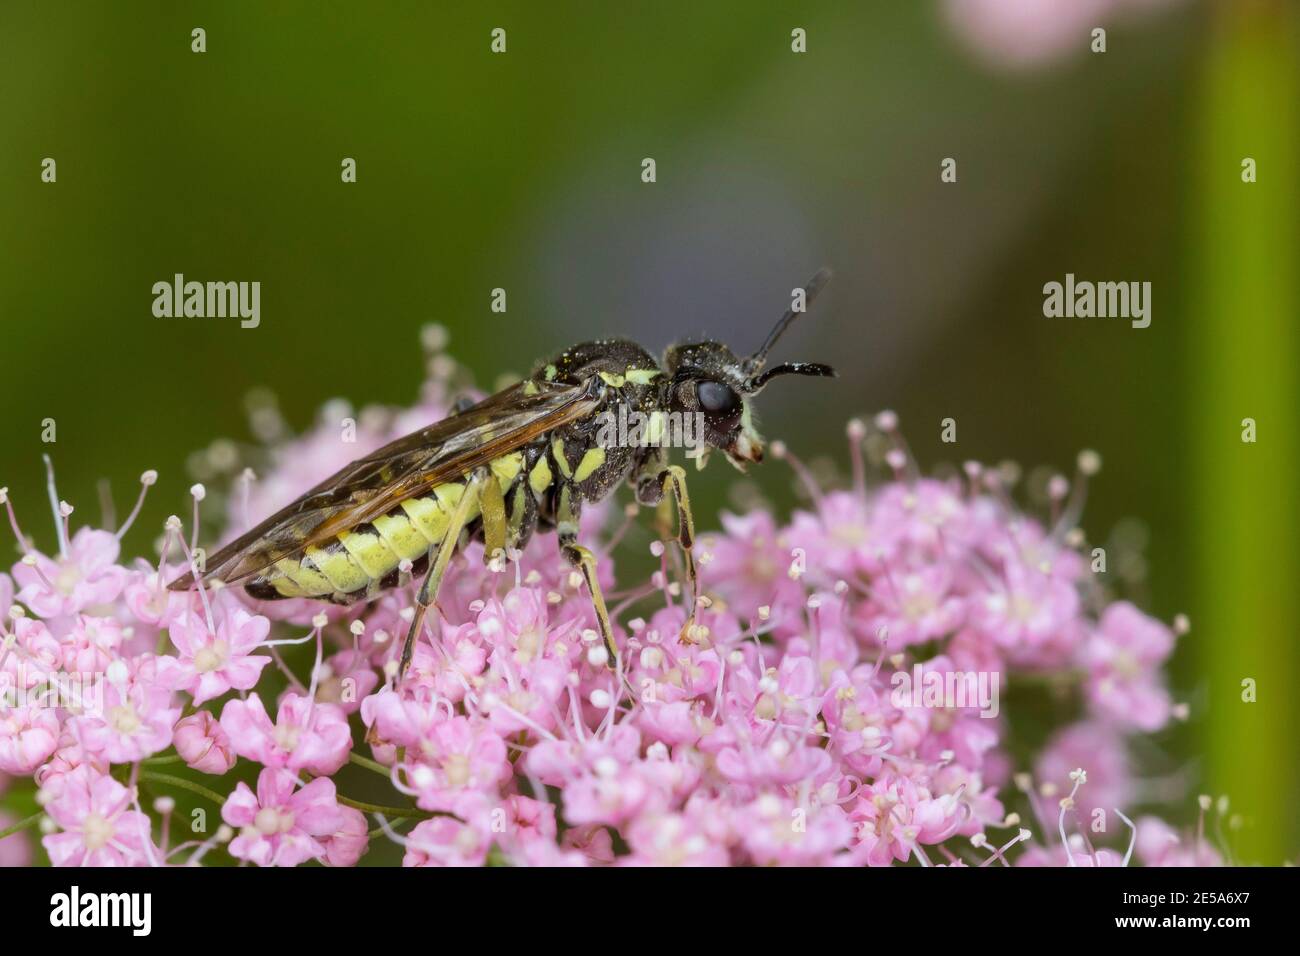 sawfly (Tenthredo spec.), sits on pink flowers, Austria, Carinthia Stock Photo